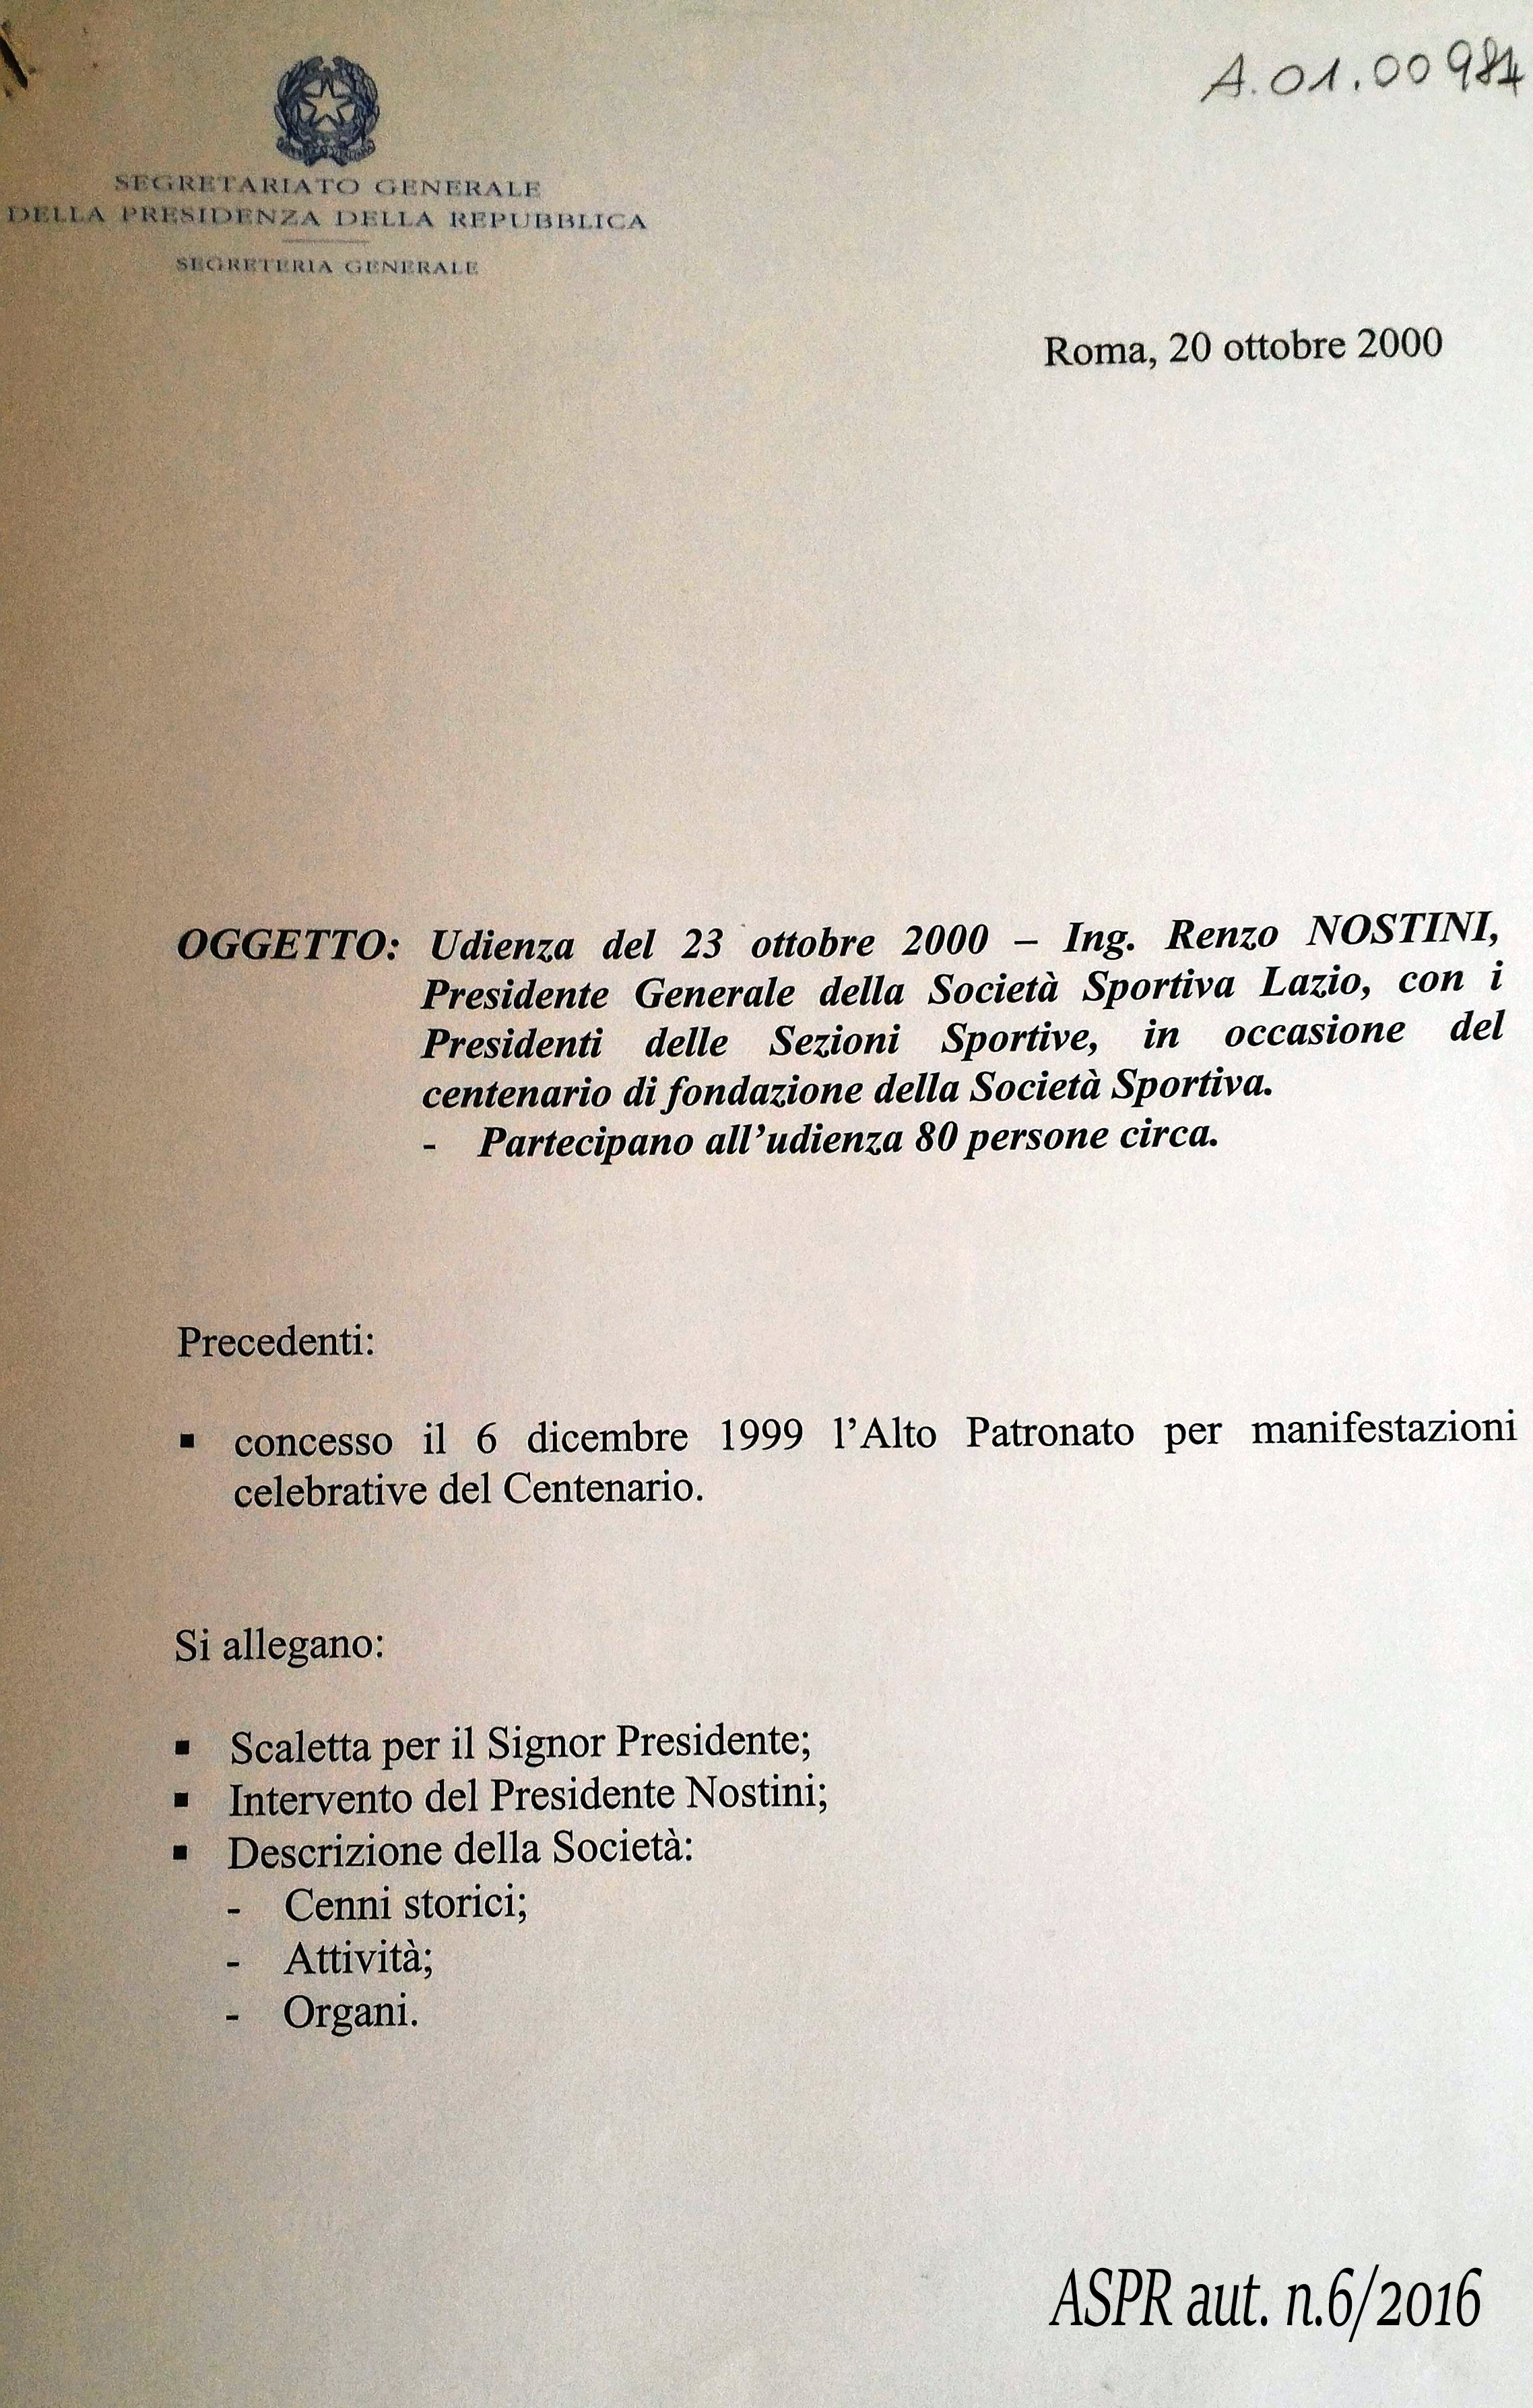 Concessione Alto Patronato - Promemoria Segreteria Generale20 ottobre 2000 (ASPR settennato Ciampi, Segreteria del Presidente A.01.00984)